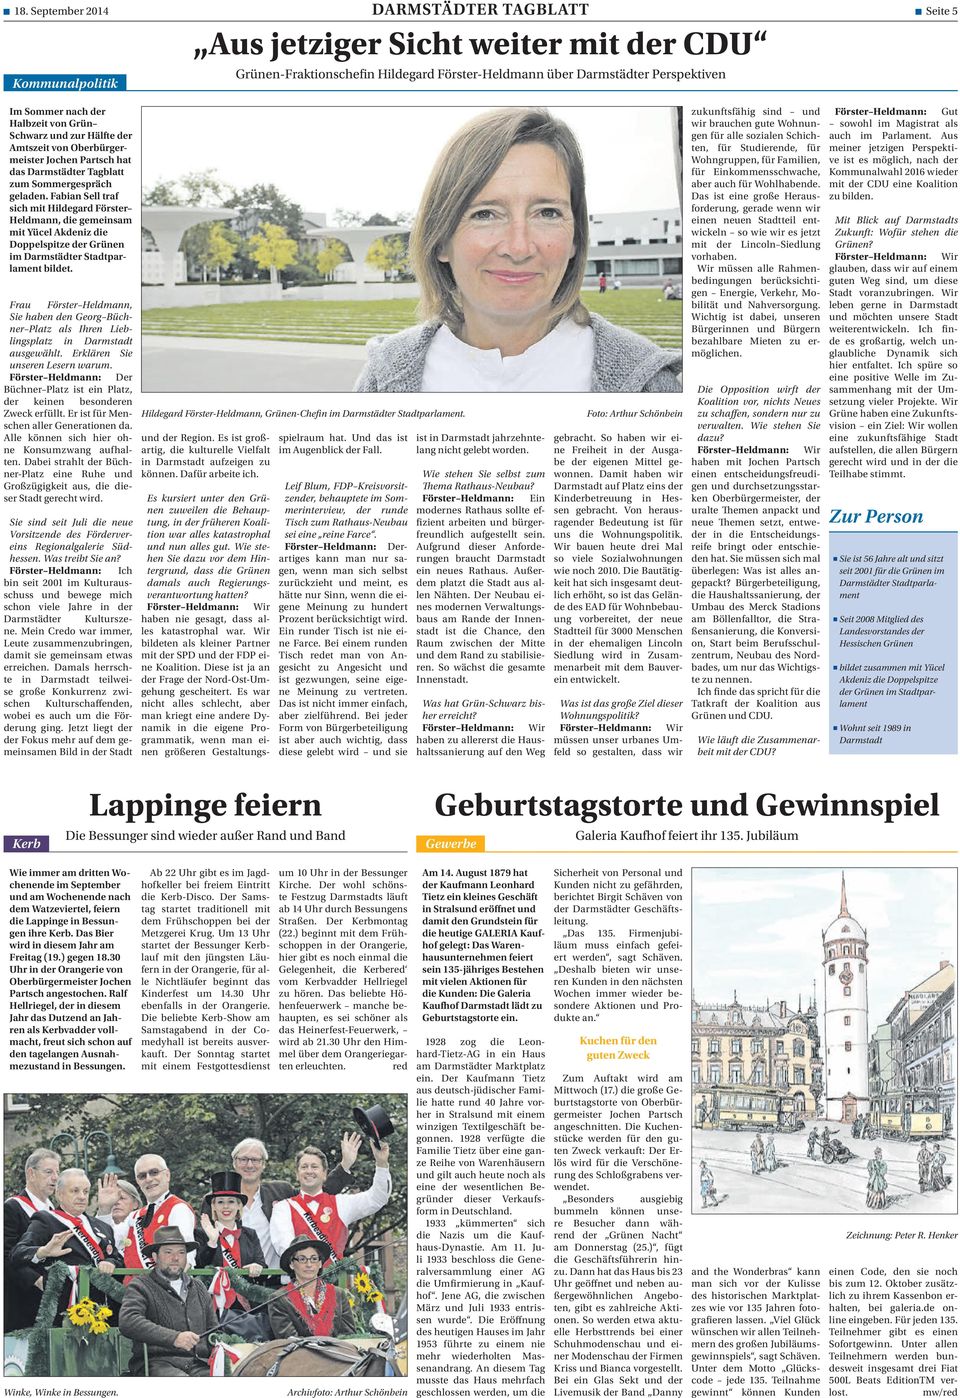 Fabian Sell traf sich mit Hildegard Förster Heldmann, die gemeinsam mit Yücel Akdeniz die Doppelspitze der Grünen im Darmstädter Stadtparlament bildet.